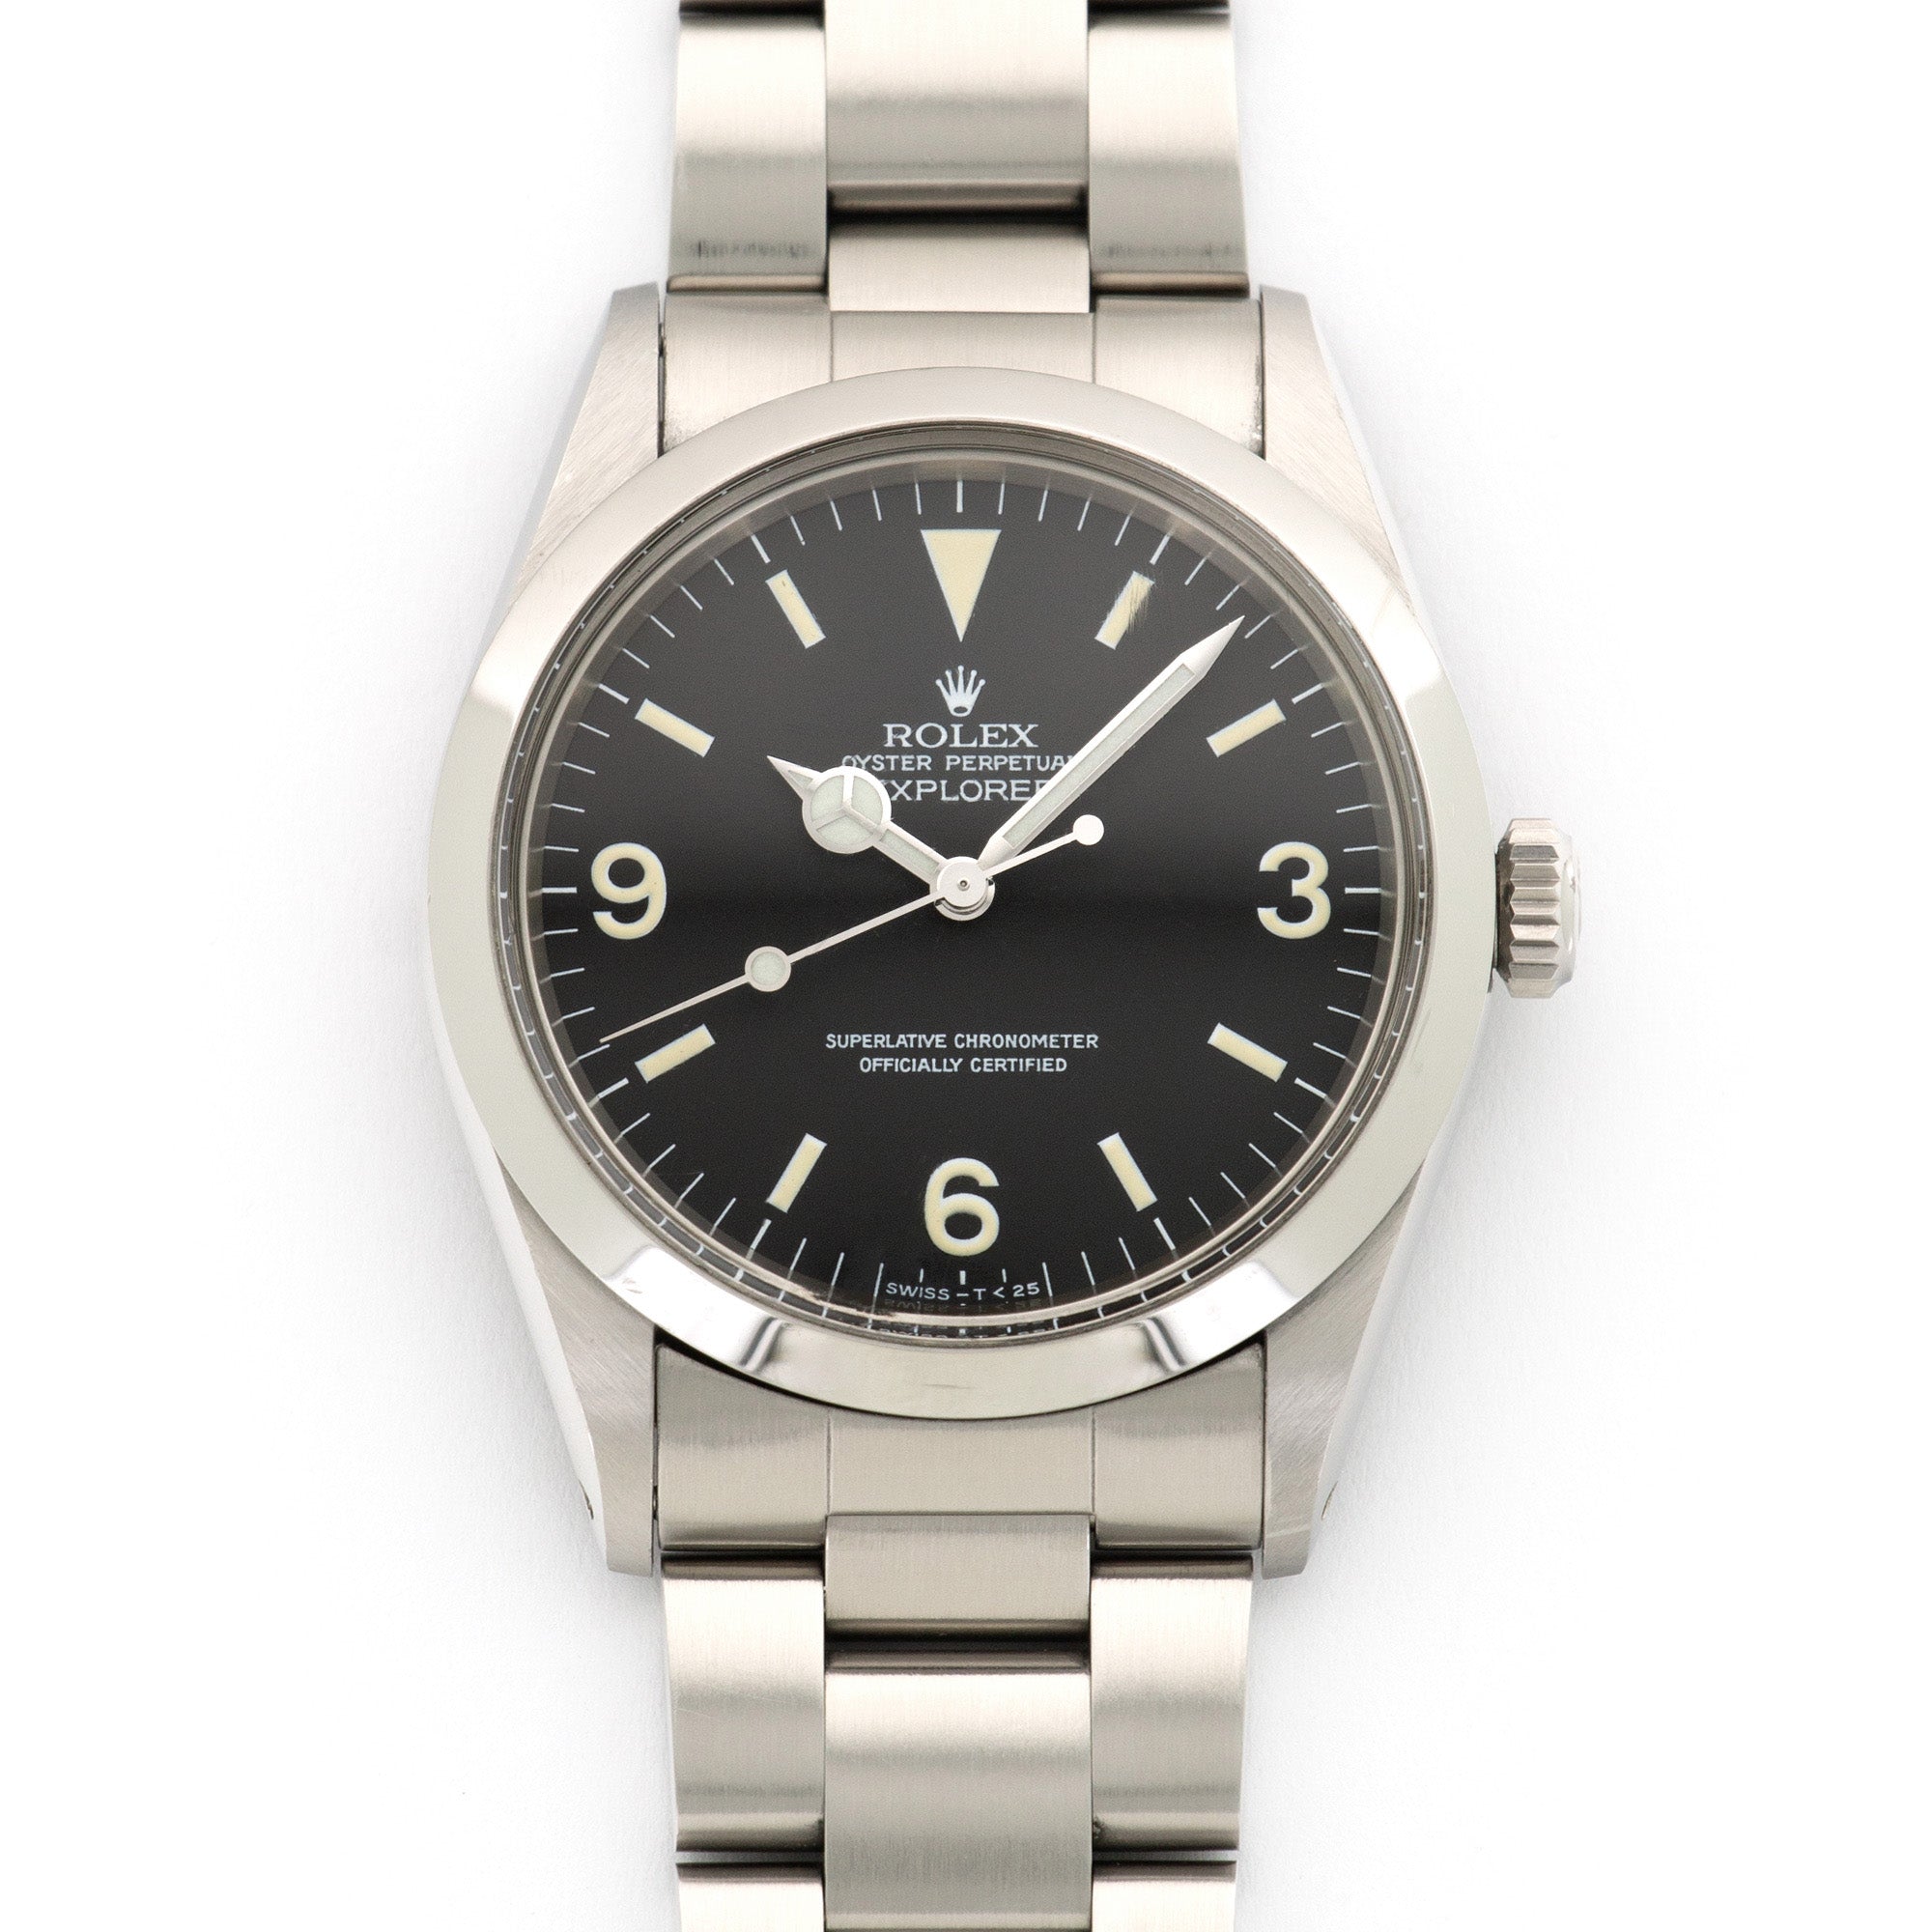 Rolex - Rolex Explorer Watch Ref. 1016, Circa 1974 - The Keystone Watches